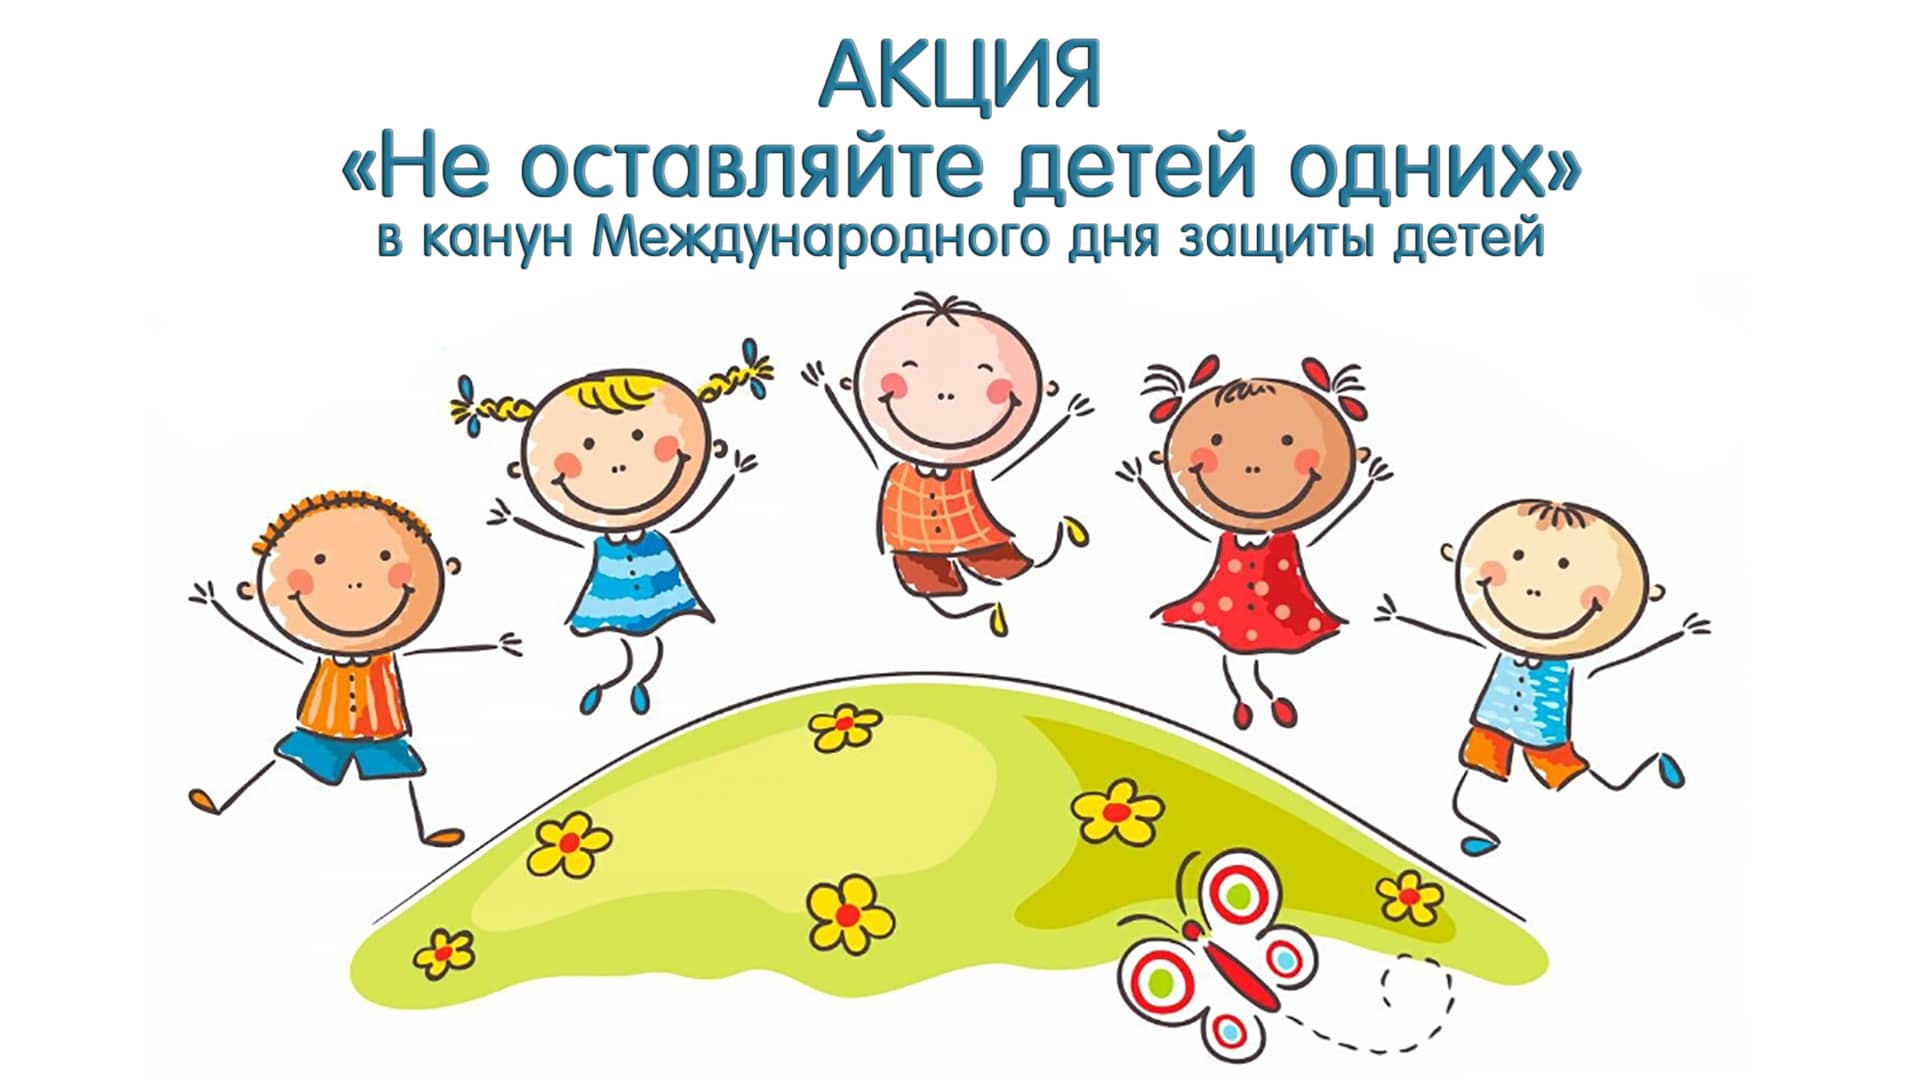 31 мая в канун Международного дня защиты детей 